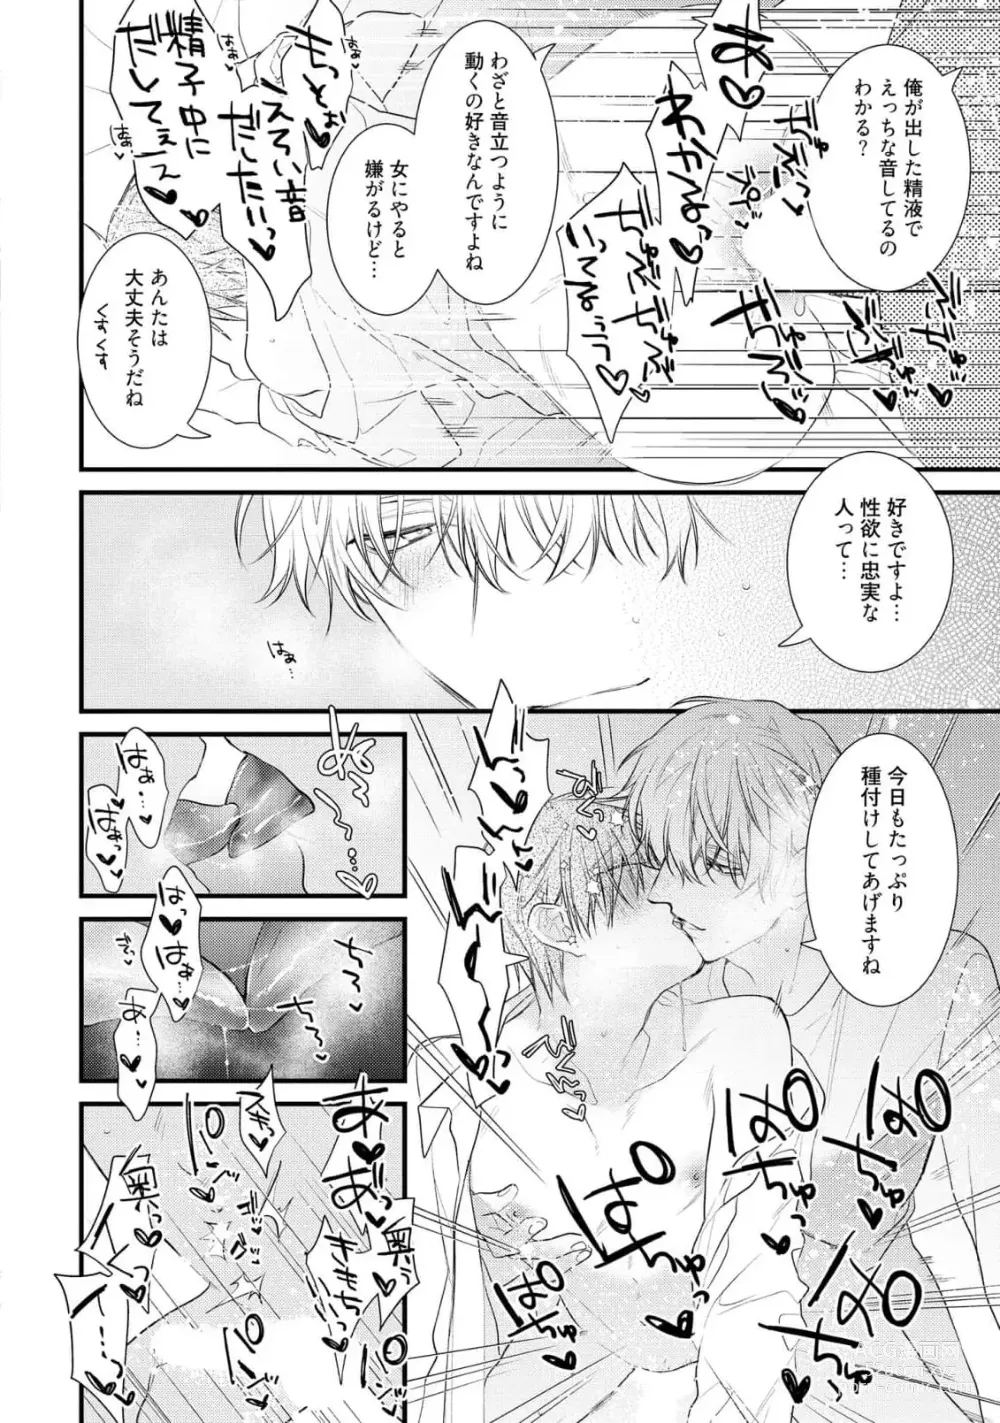 Page 30 of manga Ecchi wa shuu 7 Kibou Desu!